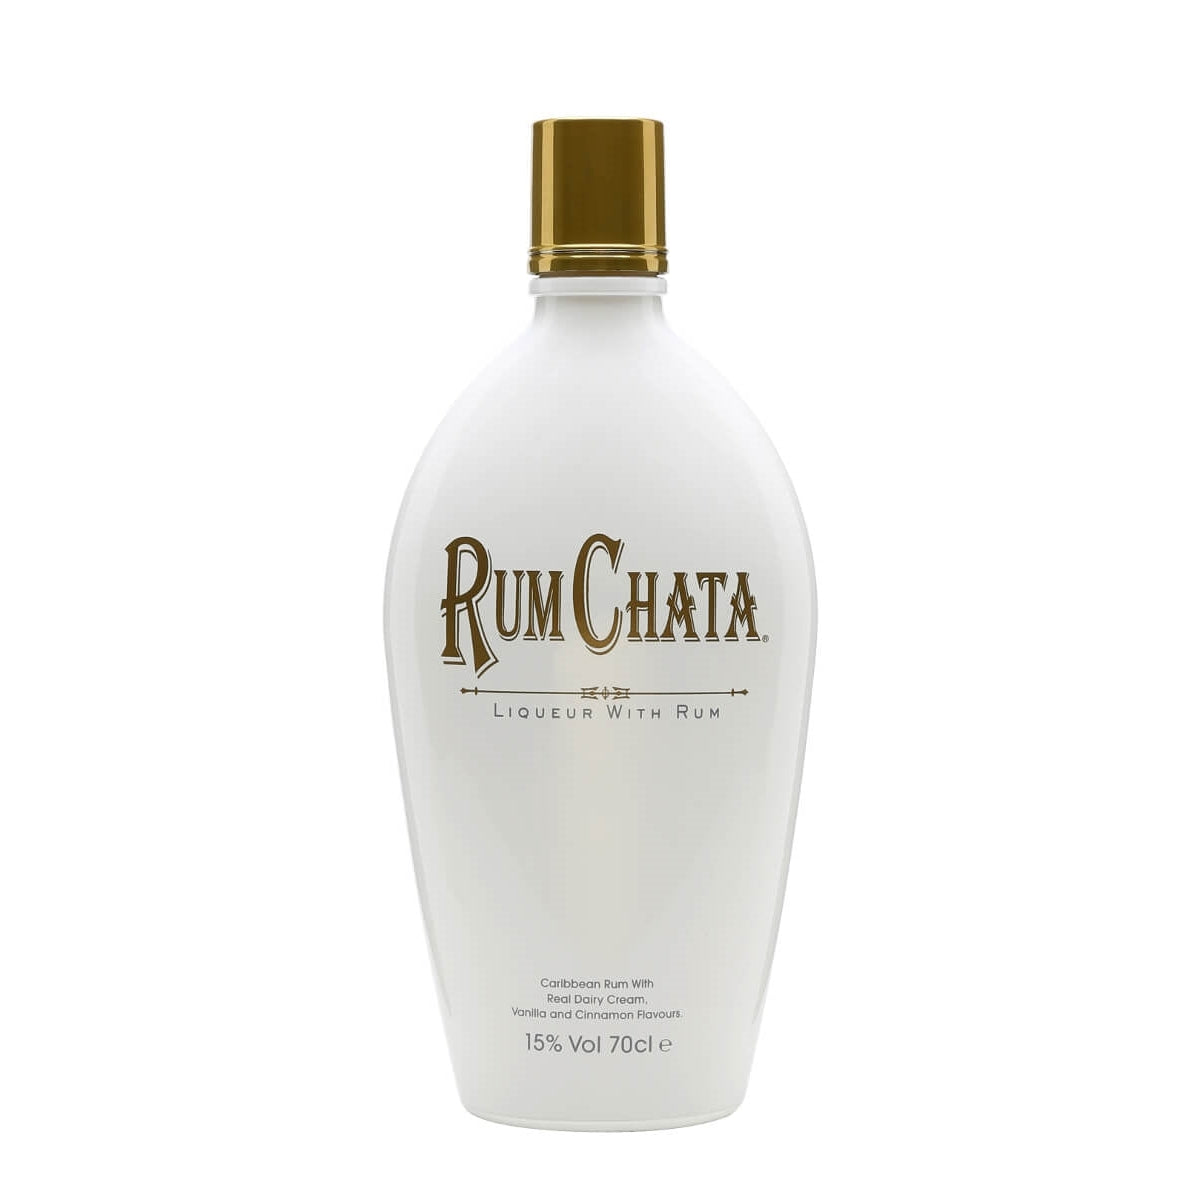 RumChata+Liqueur+with+Rum+15%+Vol.+0,7l